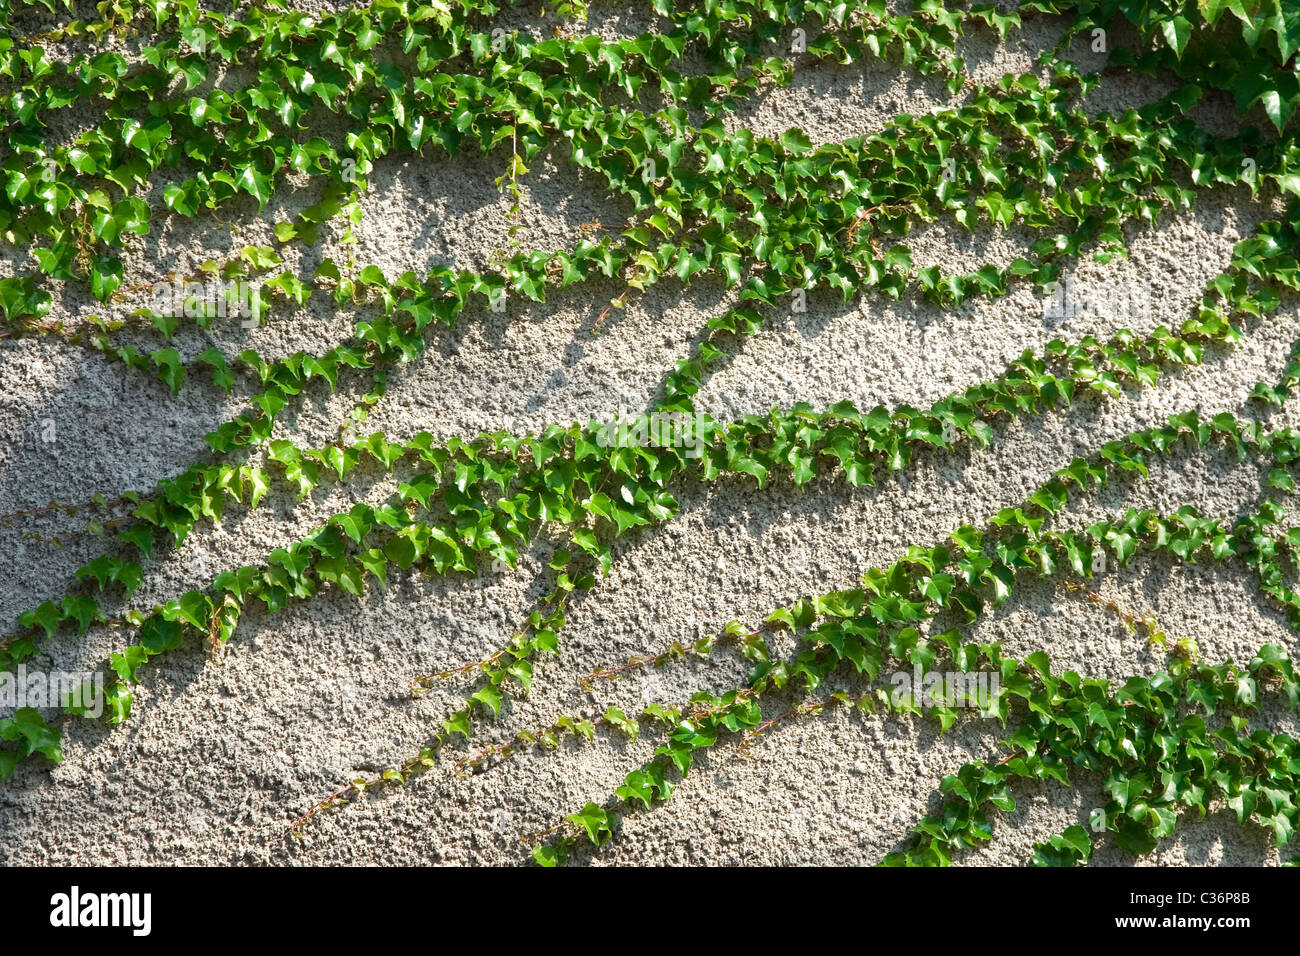 Vista frontale della pianta rampicante sul muro di cemento Foto Stock